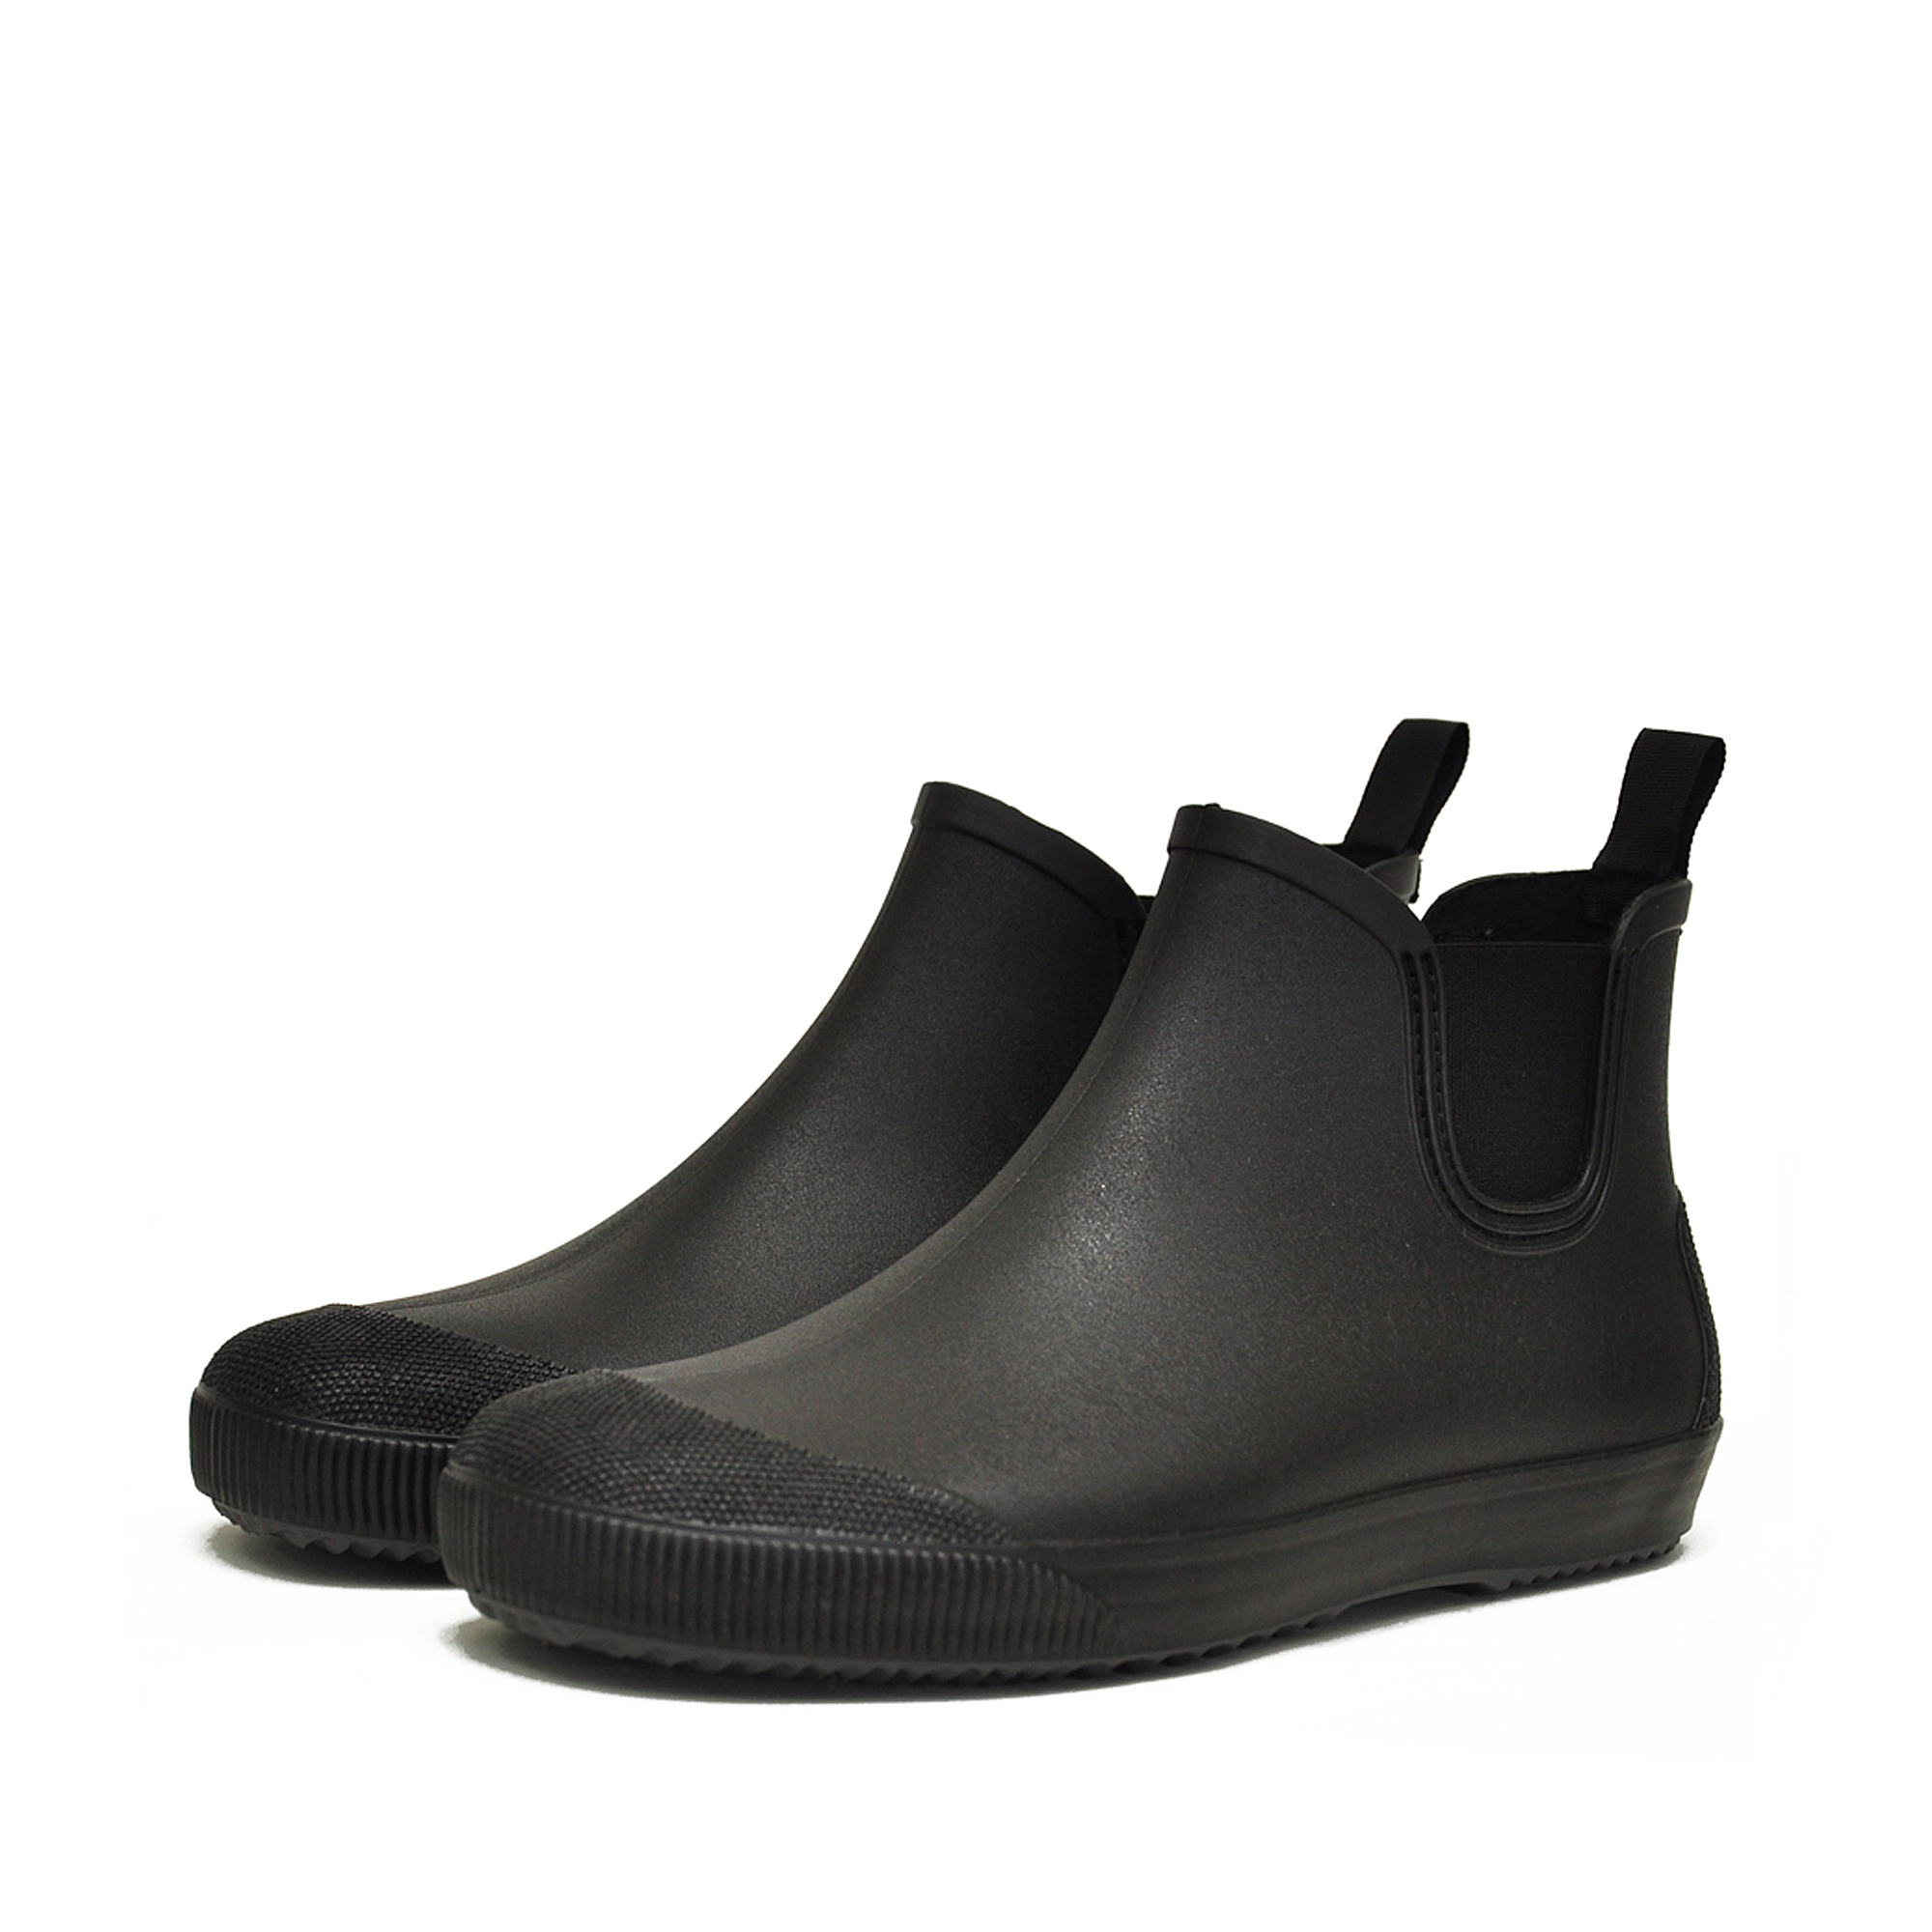 Nordman Beat ботинки мужские черные с серой подошвой купить в Москве